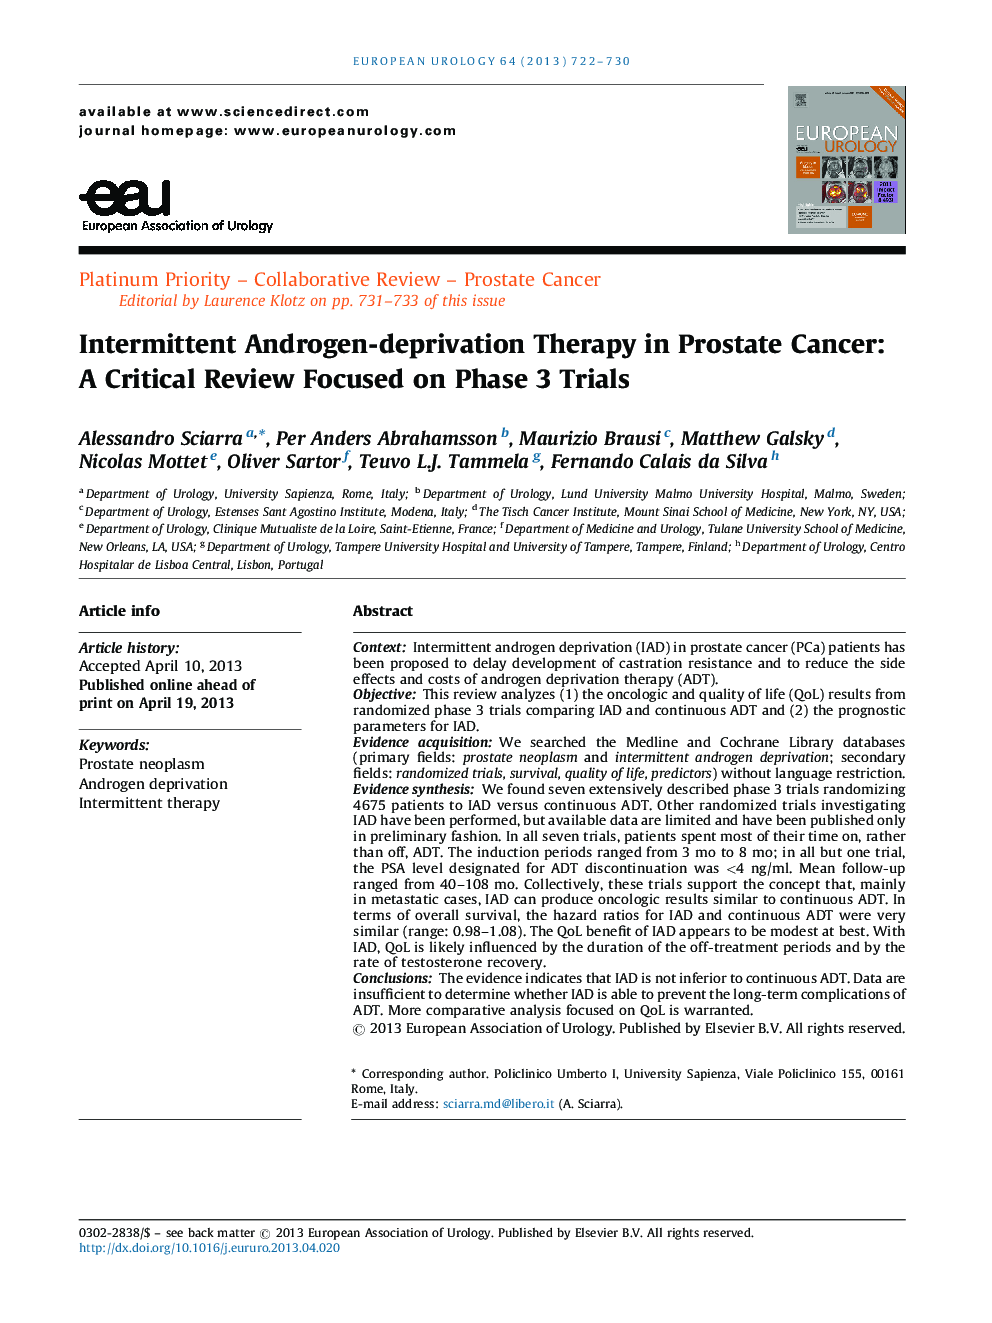 درمان متداول درمان آندروژن در سرطان پروستات: یک مرور انتقادی تمرکز در محاکمه فاز 3 